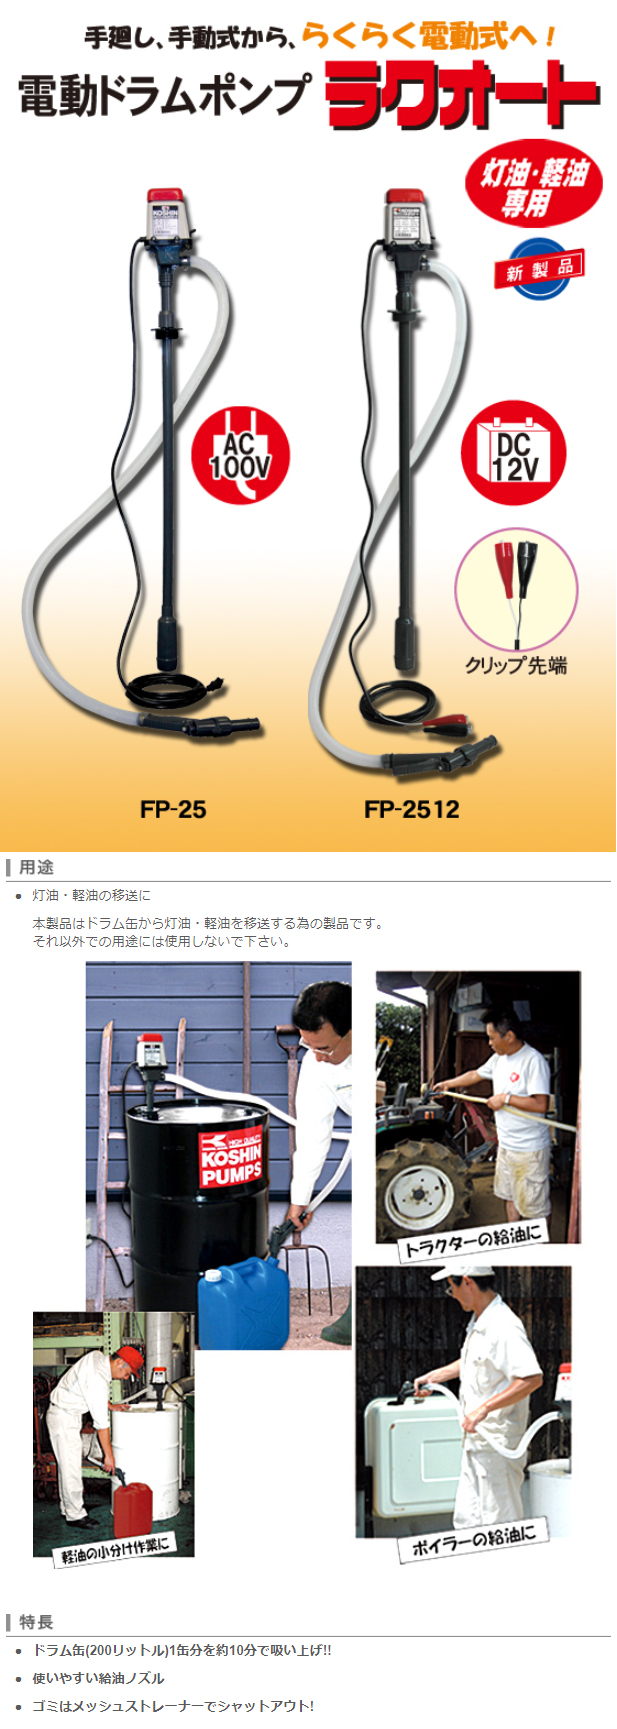 灯油・軽油専用電動ポンプ ラクオート FP-25(FP-25-AAA-1) | 株式会社 